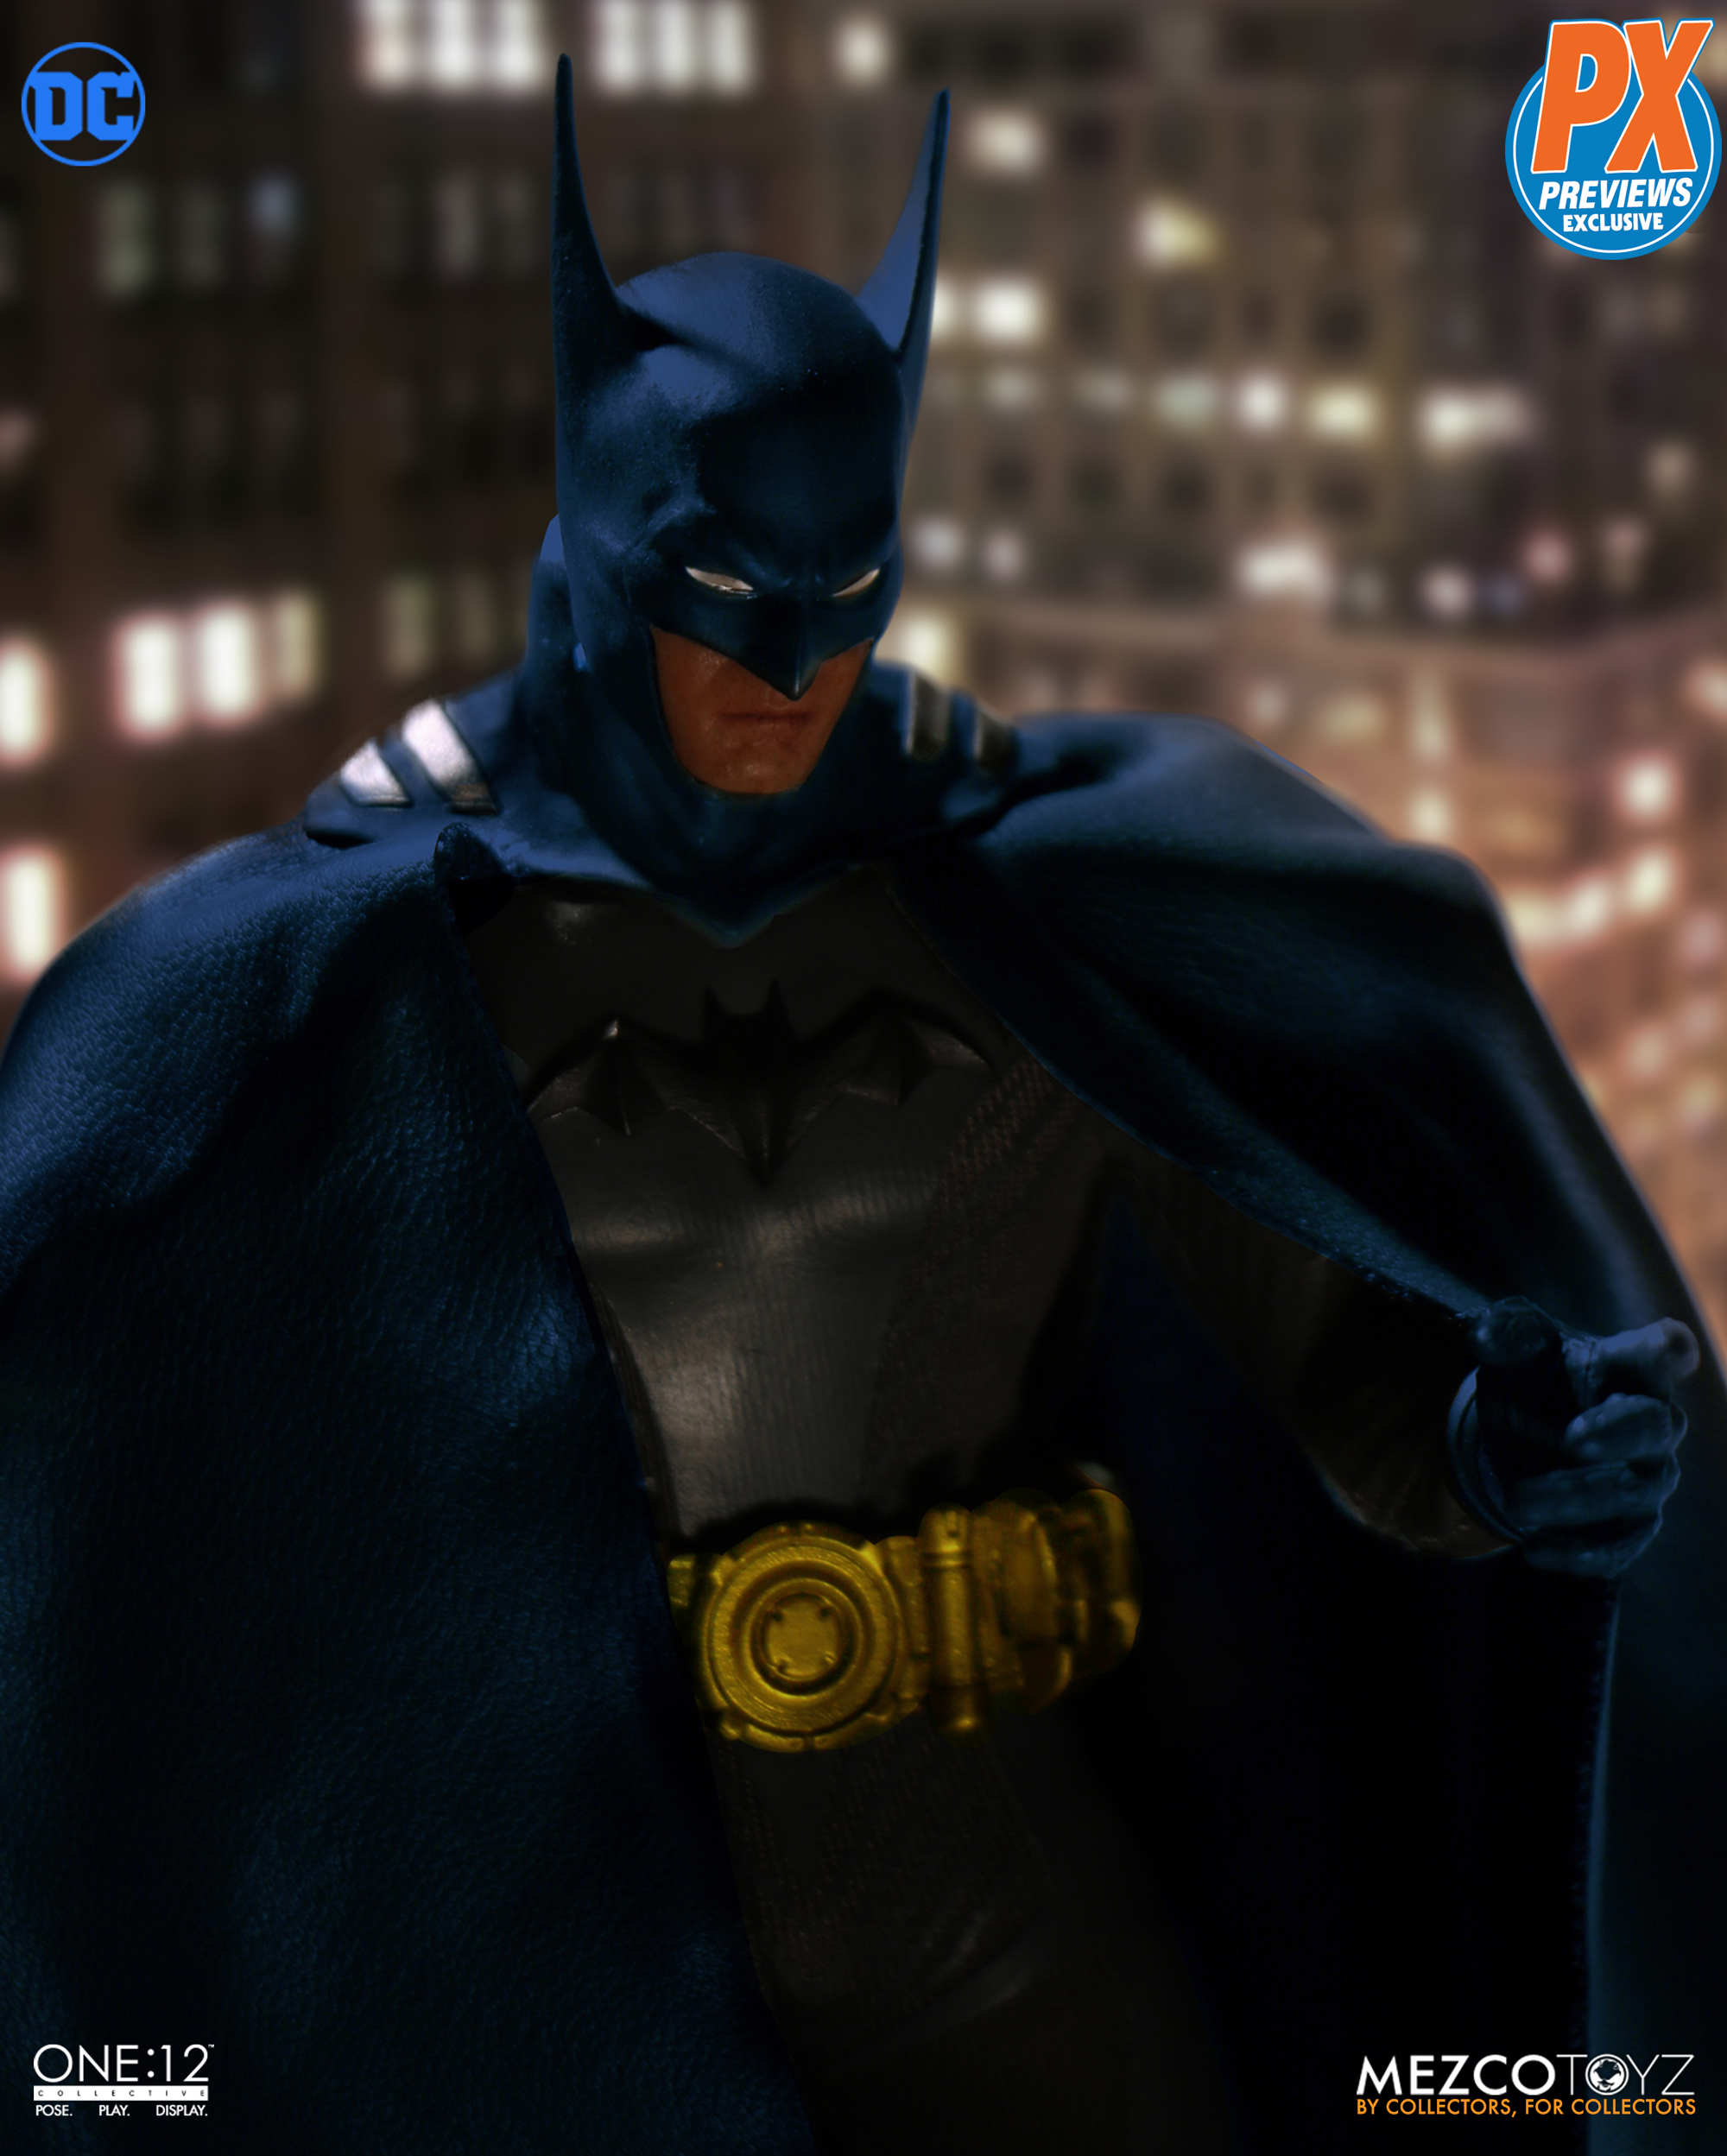 Mezco One:12 Collective DC PX Previews Exclusive Ascending Knight Batman Blue 